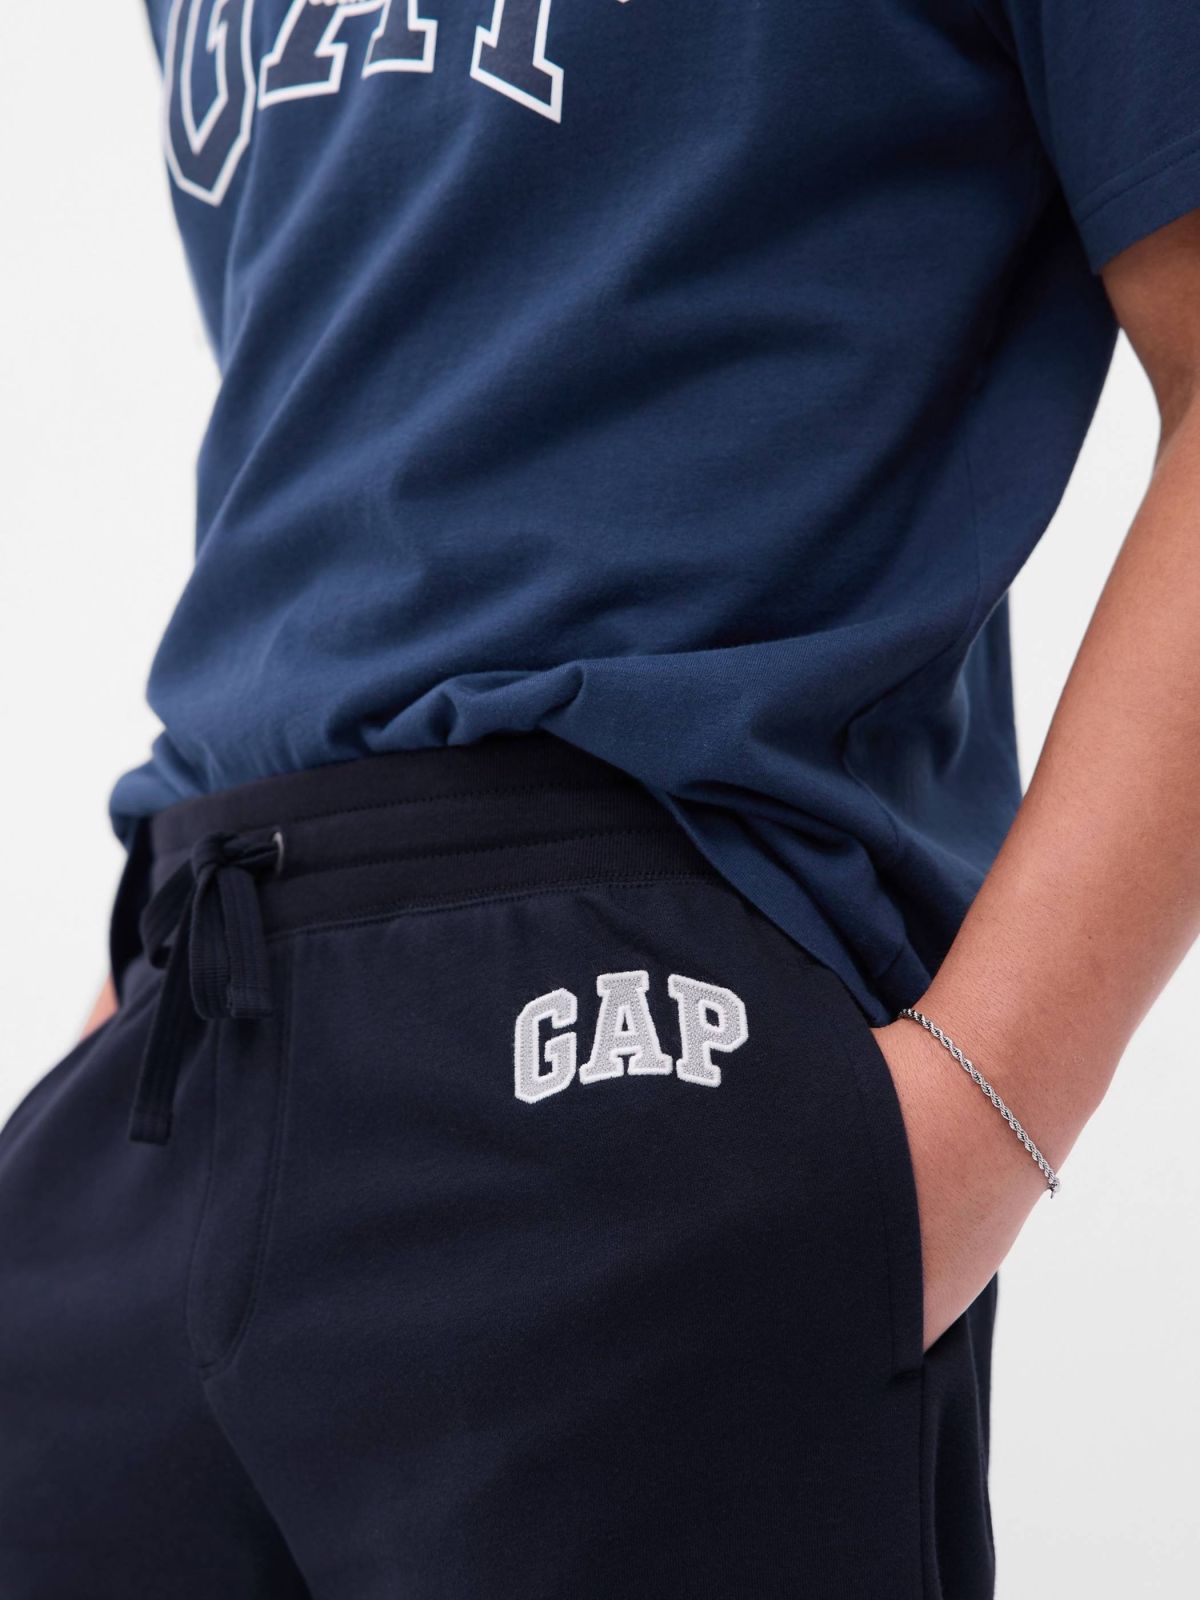  מכנסיים קצרים עם לוגו של GAP